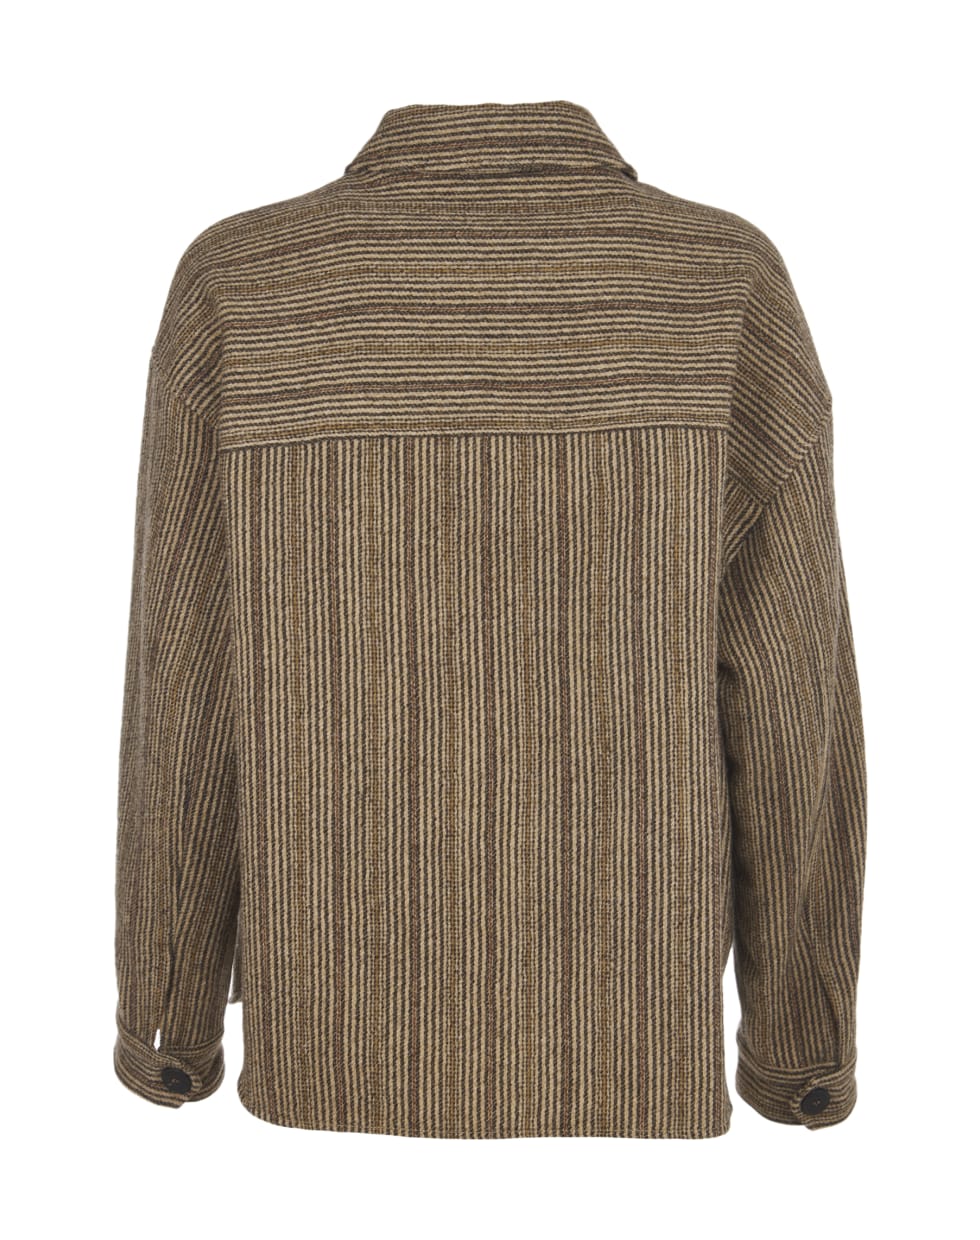 Pomandère Striped Wool Jacket - Brown